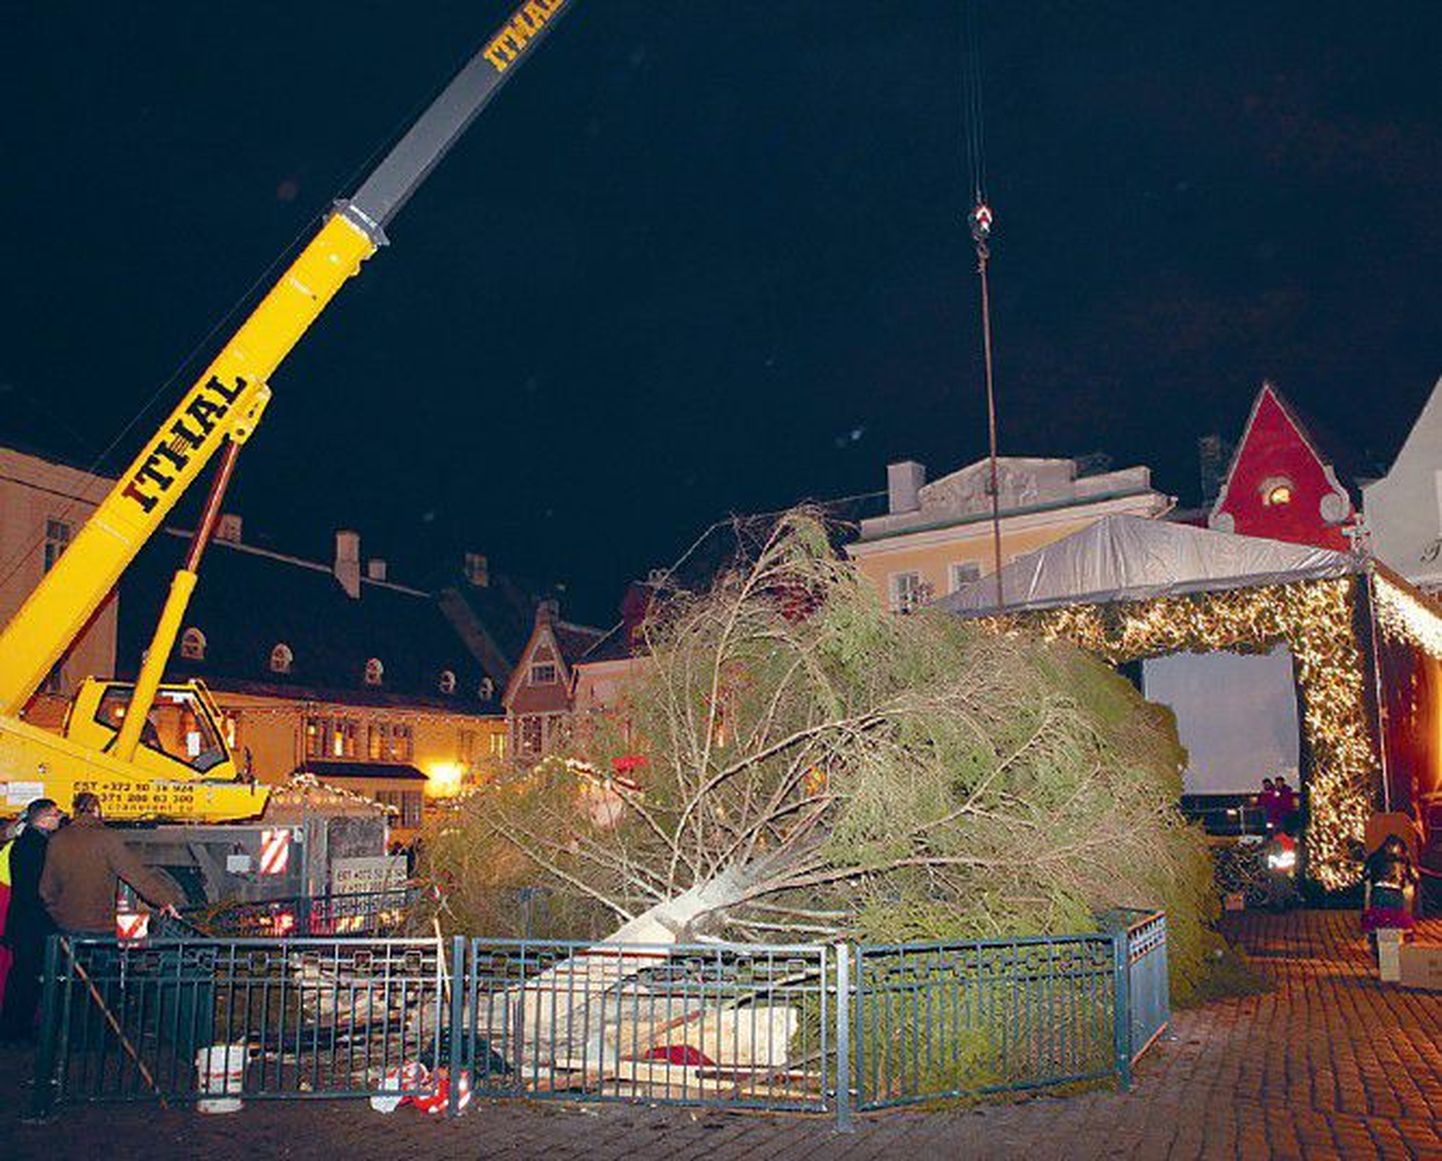 Начало адвента в Таллинне было омрачено падением рождественской ели на Ратушной площади. Сейчас елка, потерявшая треть своей высоты, красуется на площади в центре рождественского рынка.